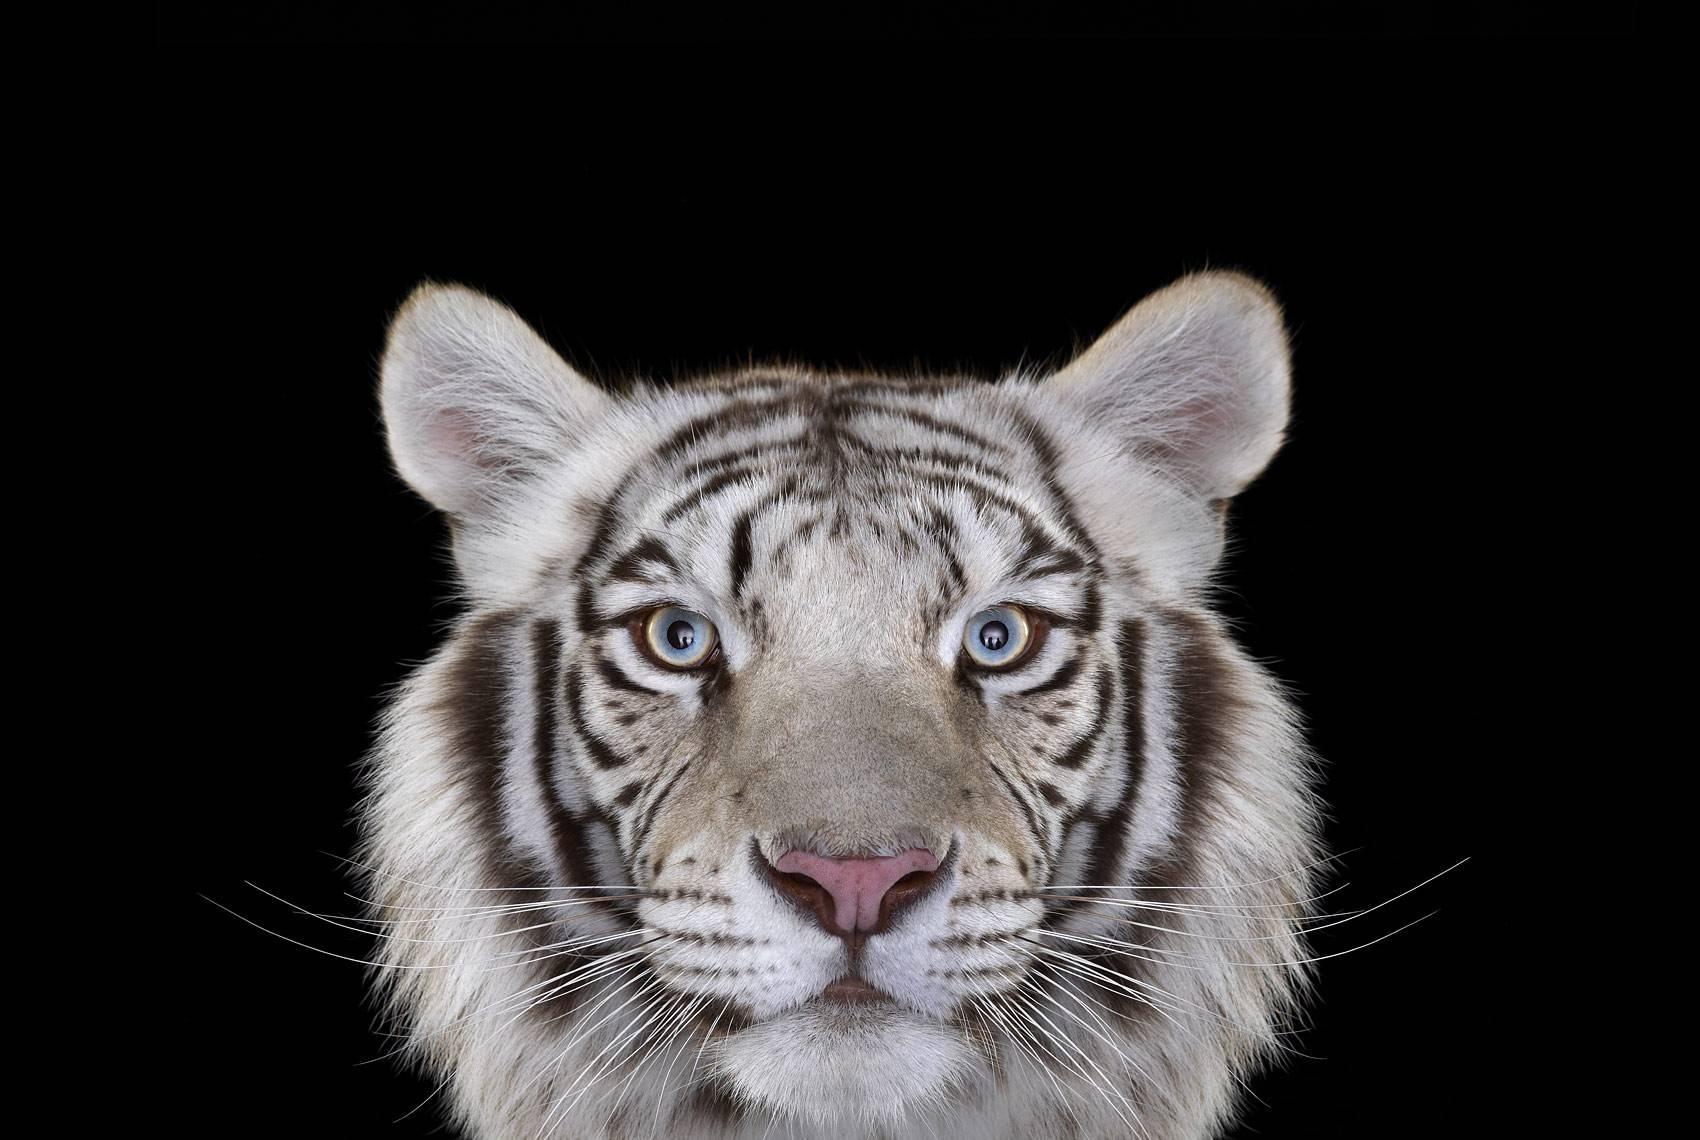 White Tiger #4, Los Angeles, CA, 2010" ist eine limitierte Auflage eines Fotos des zeitgenössischen Künstlers Brad Wilson aus der Serie "Affinity", die Studioporträts von Wildtieren zeigt. 

Dieses Foto wird nur als ungerahmter Abzug verkauft. Es